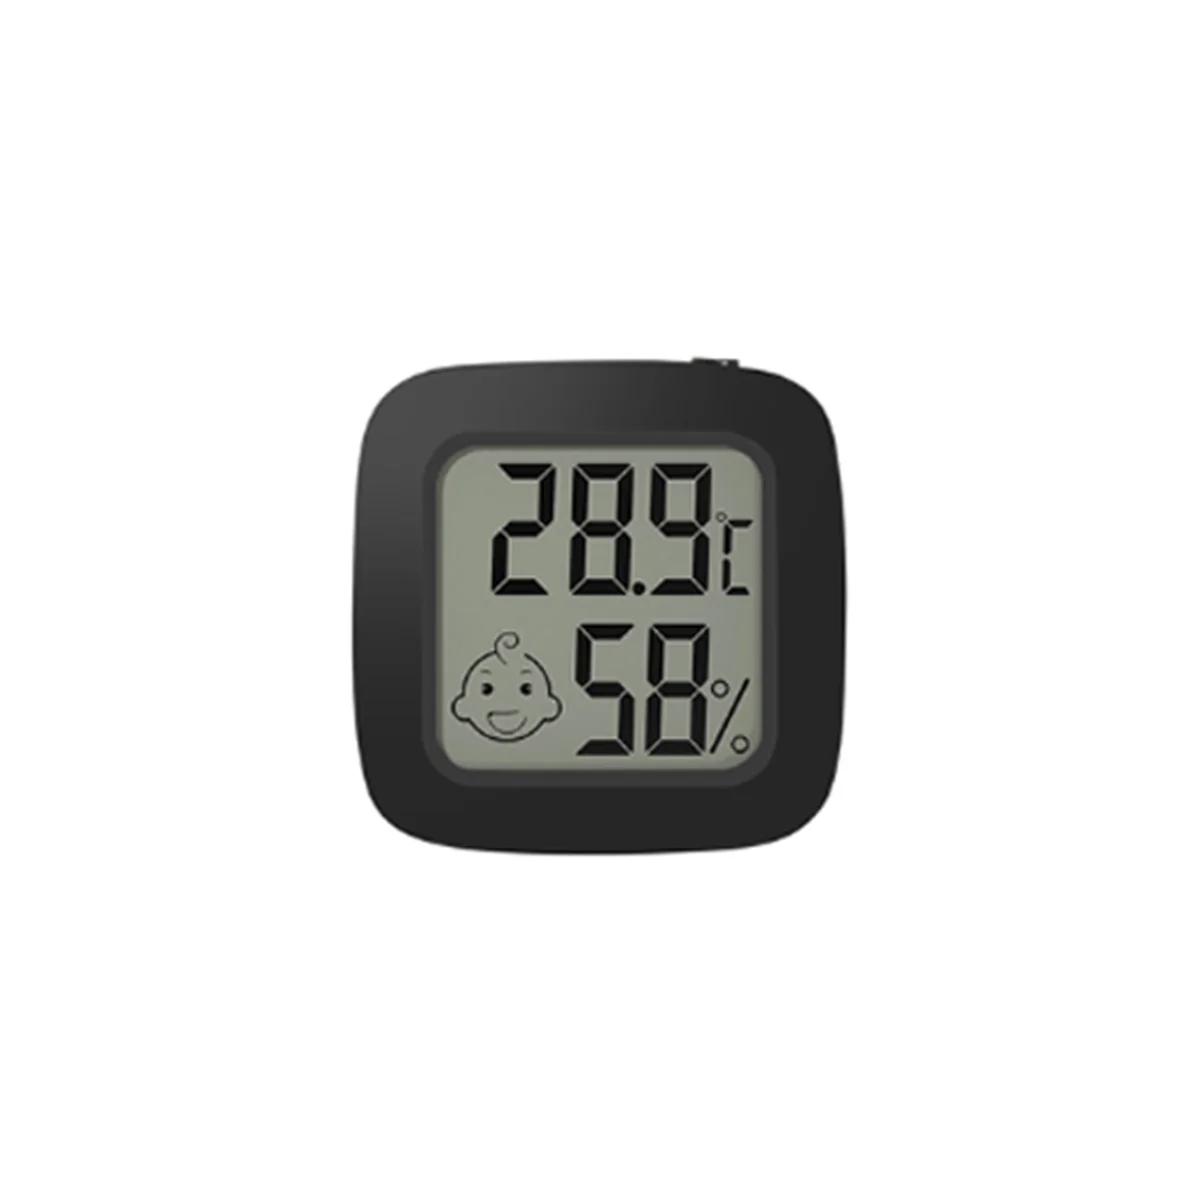 

Цифровая метеостанция, Мини термометр-гигрометр с ЖК дисплеем, измеритель температуры и влажности, черный цвет